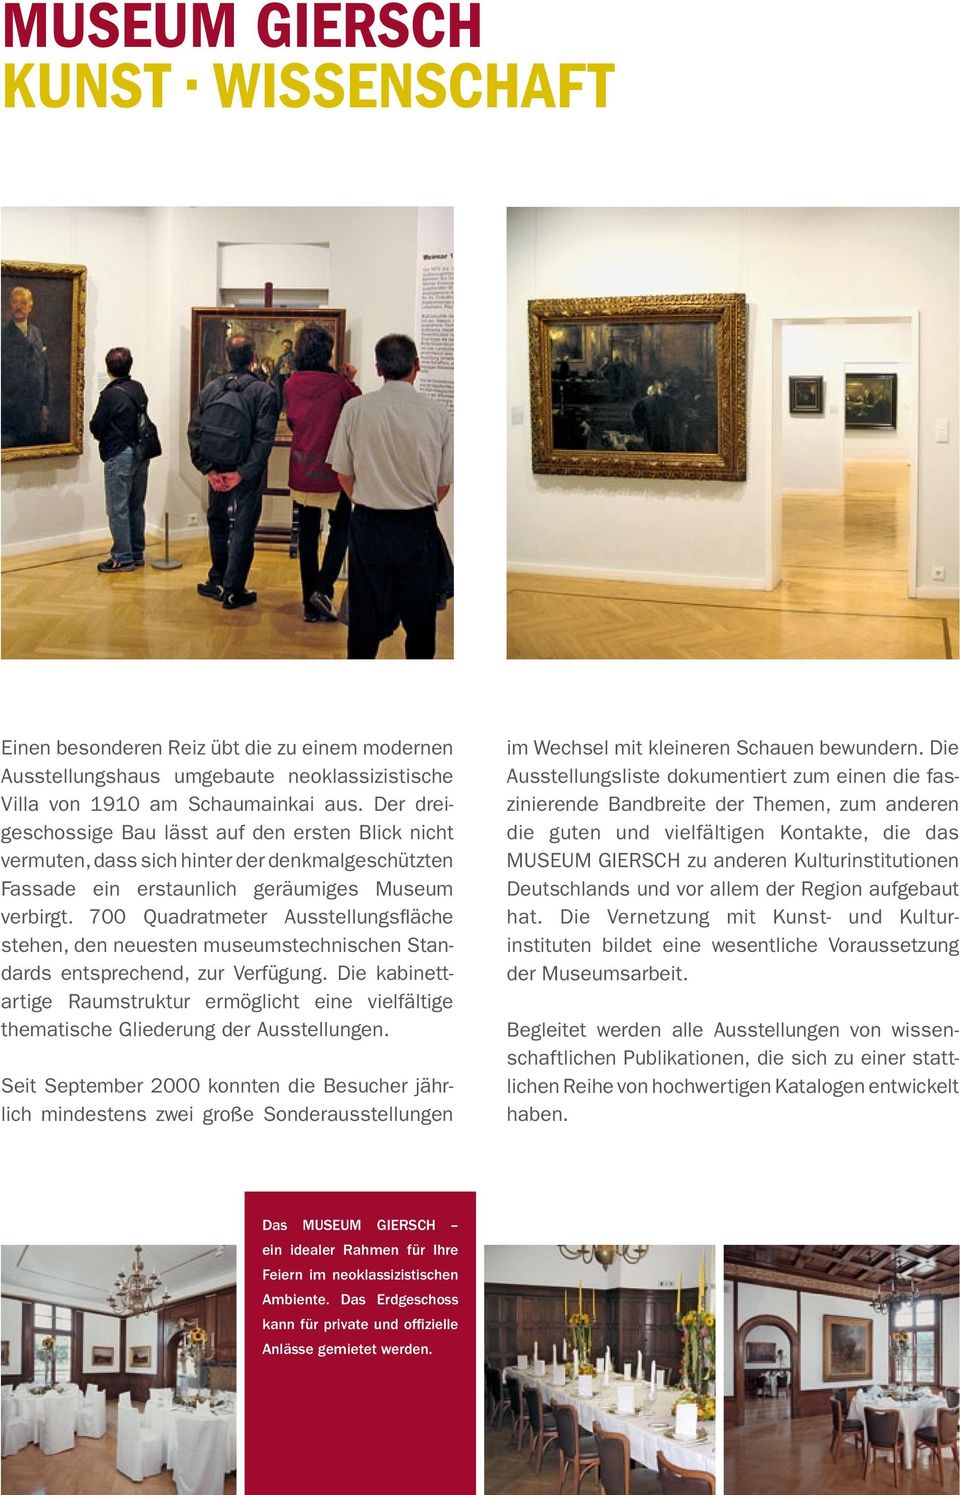 700 Quadratmeter Ausstellungsfläche stehen, den neuesten museumstechnischen Standards entsprechend, zur Verfügung.